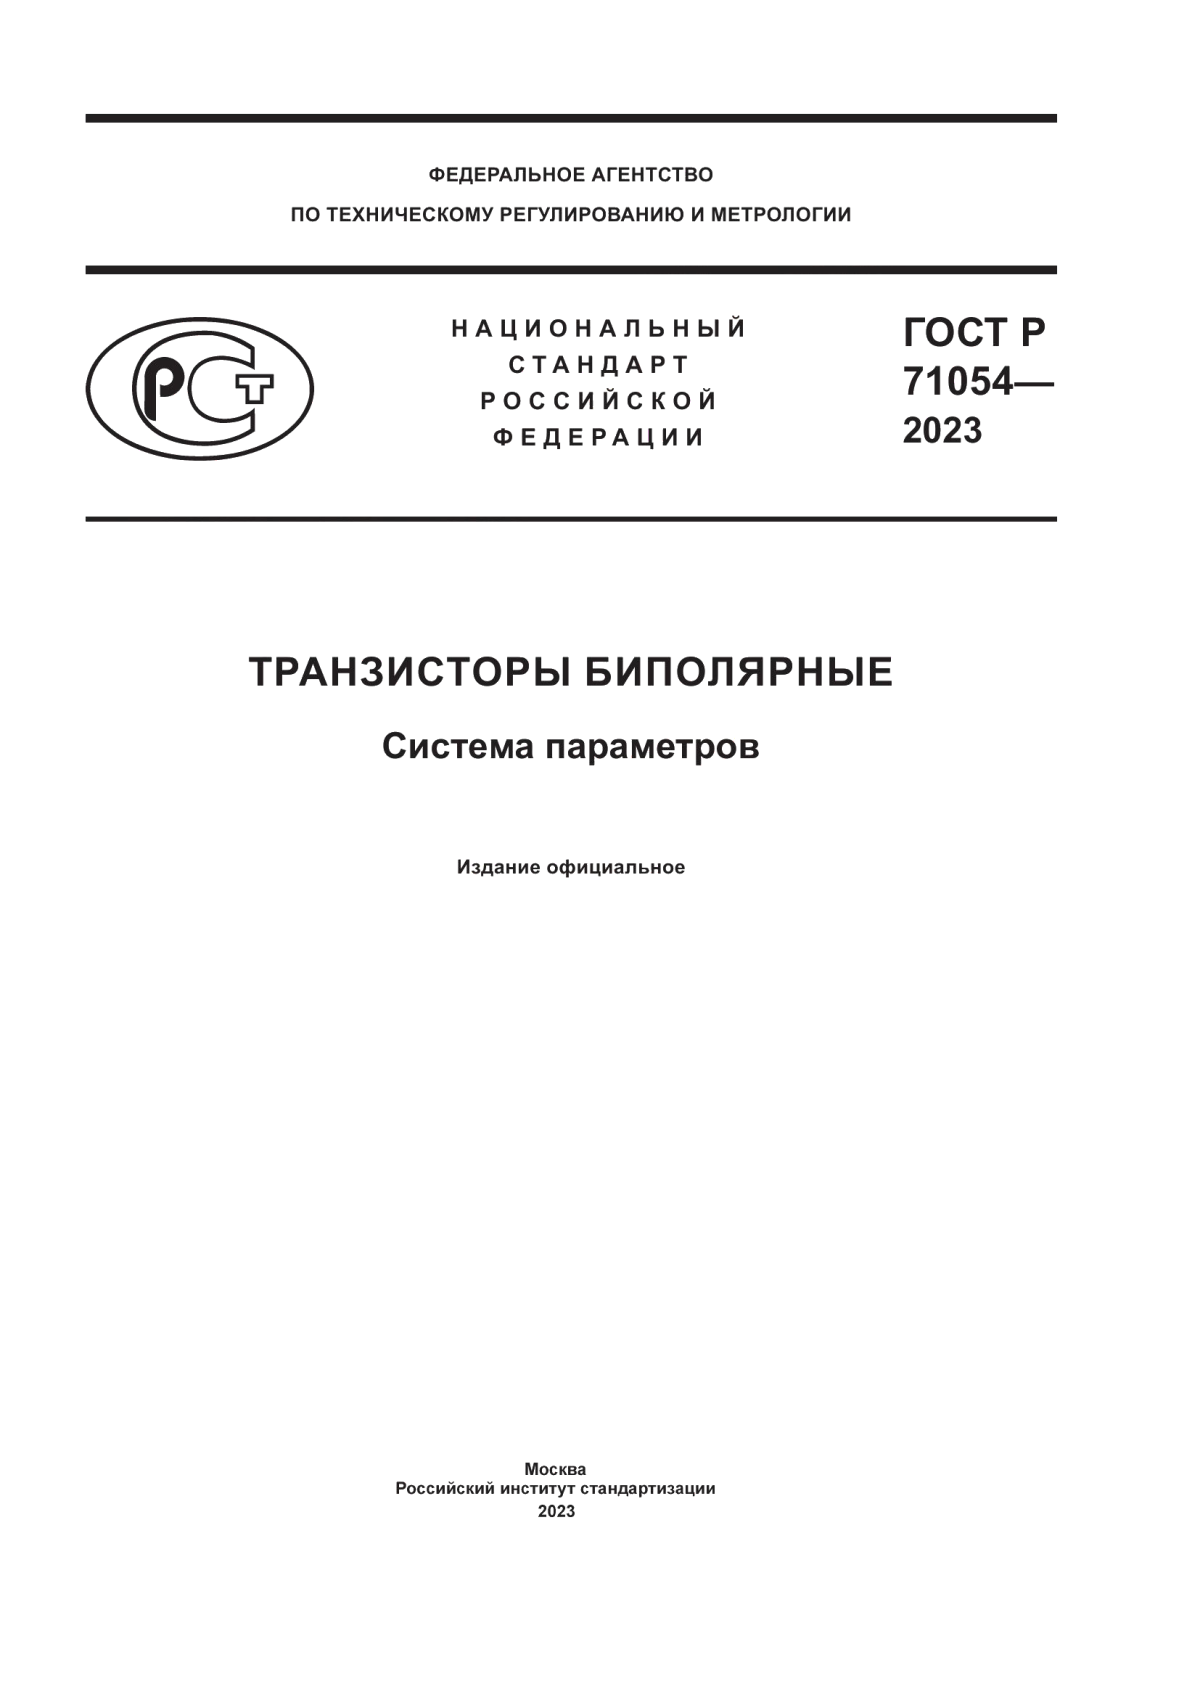 ГОСТ Р 71054-2023 Транзисторы биполярные. Система параметров